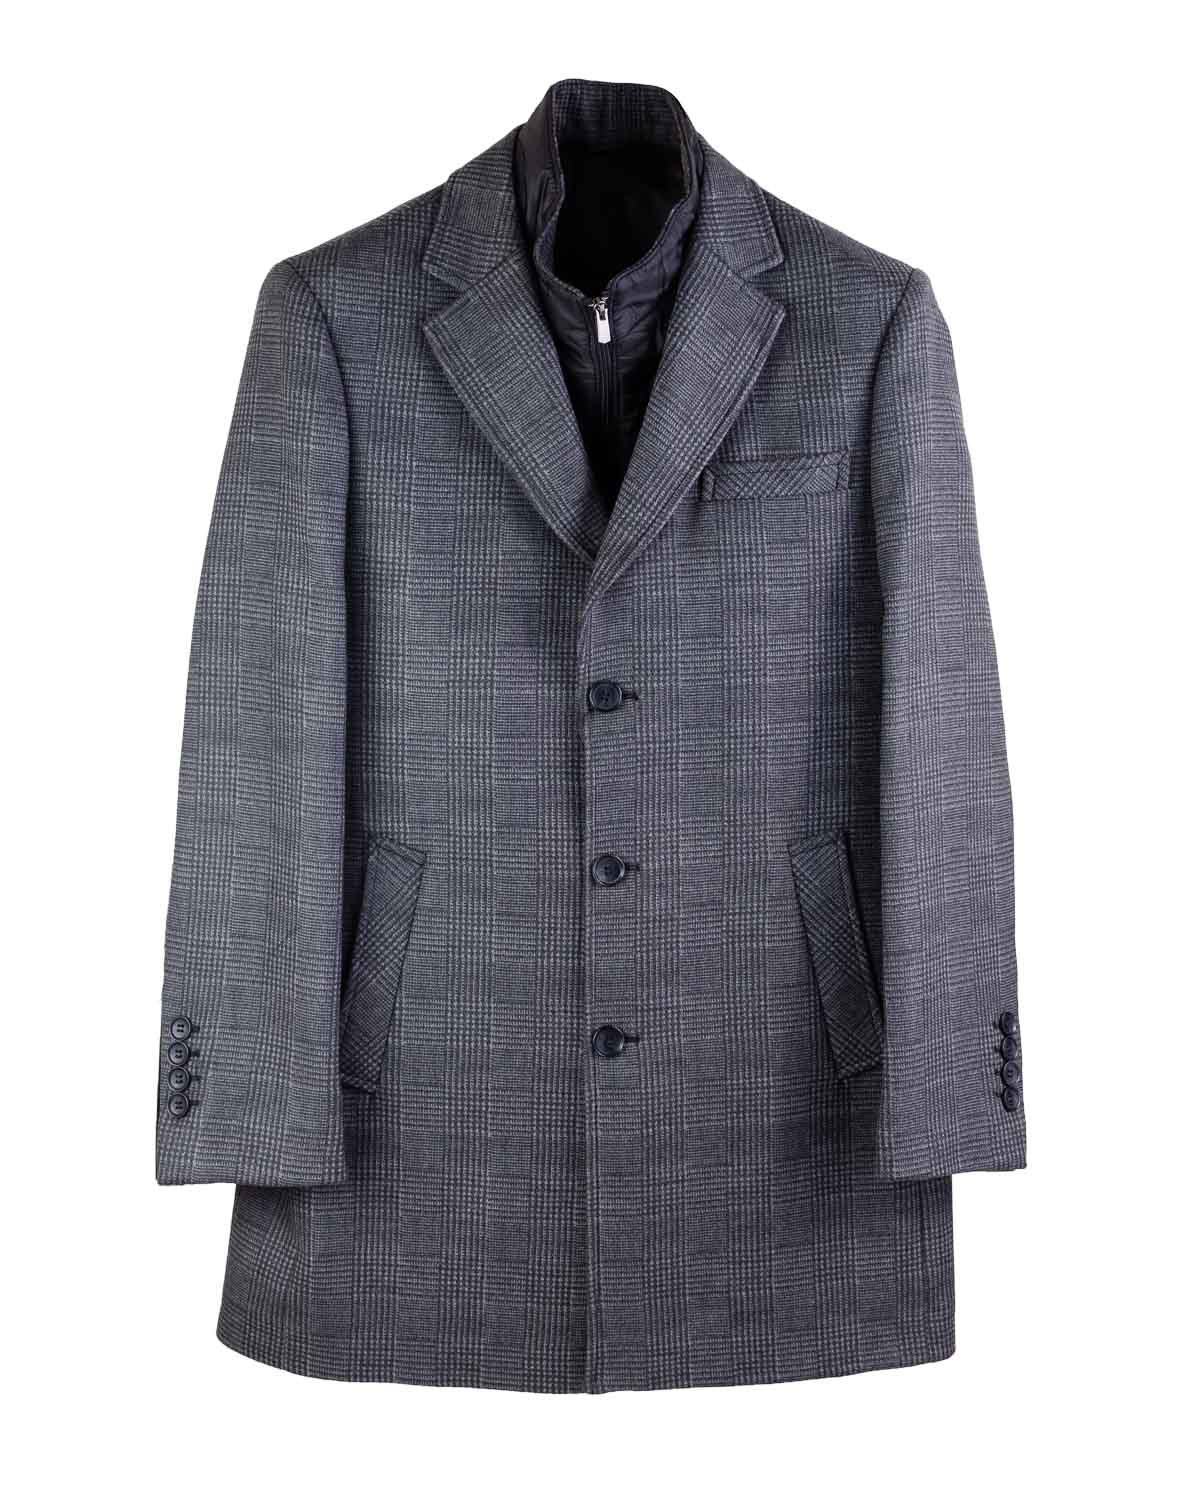 Alexander&Co. abrigo corto paño azul para hombre Alexander & Co.